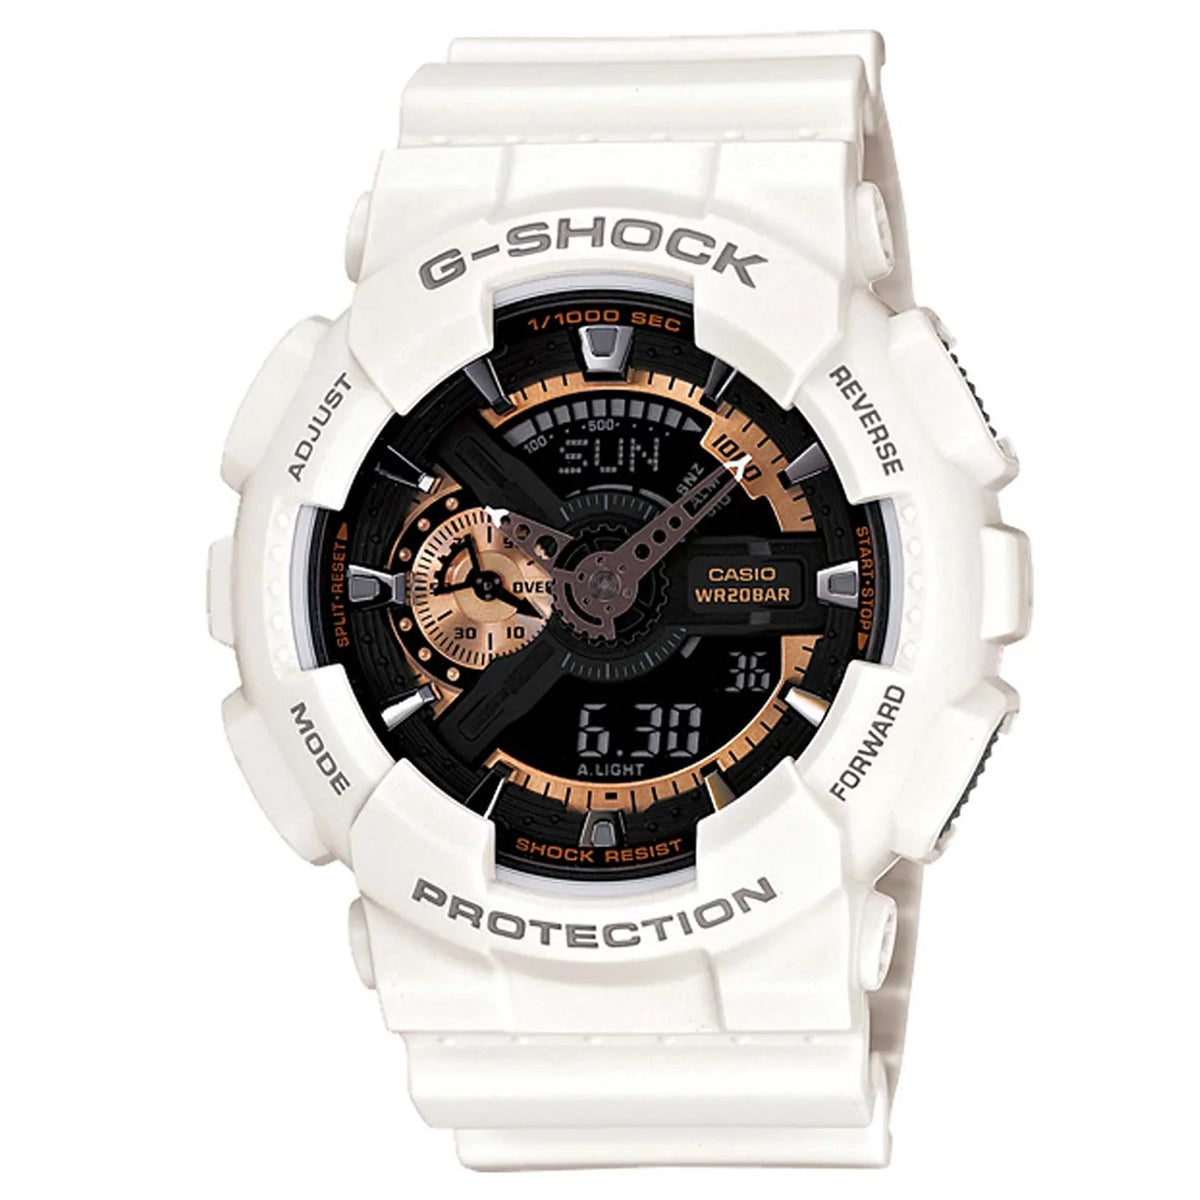 Casio - G-Shock - GA-110RG-7ADR